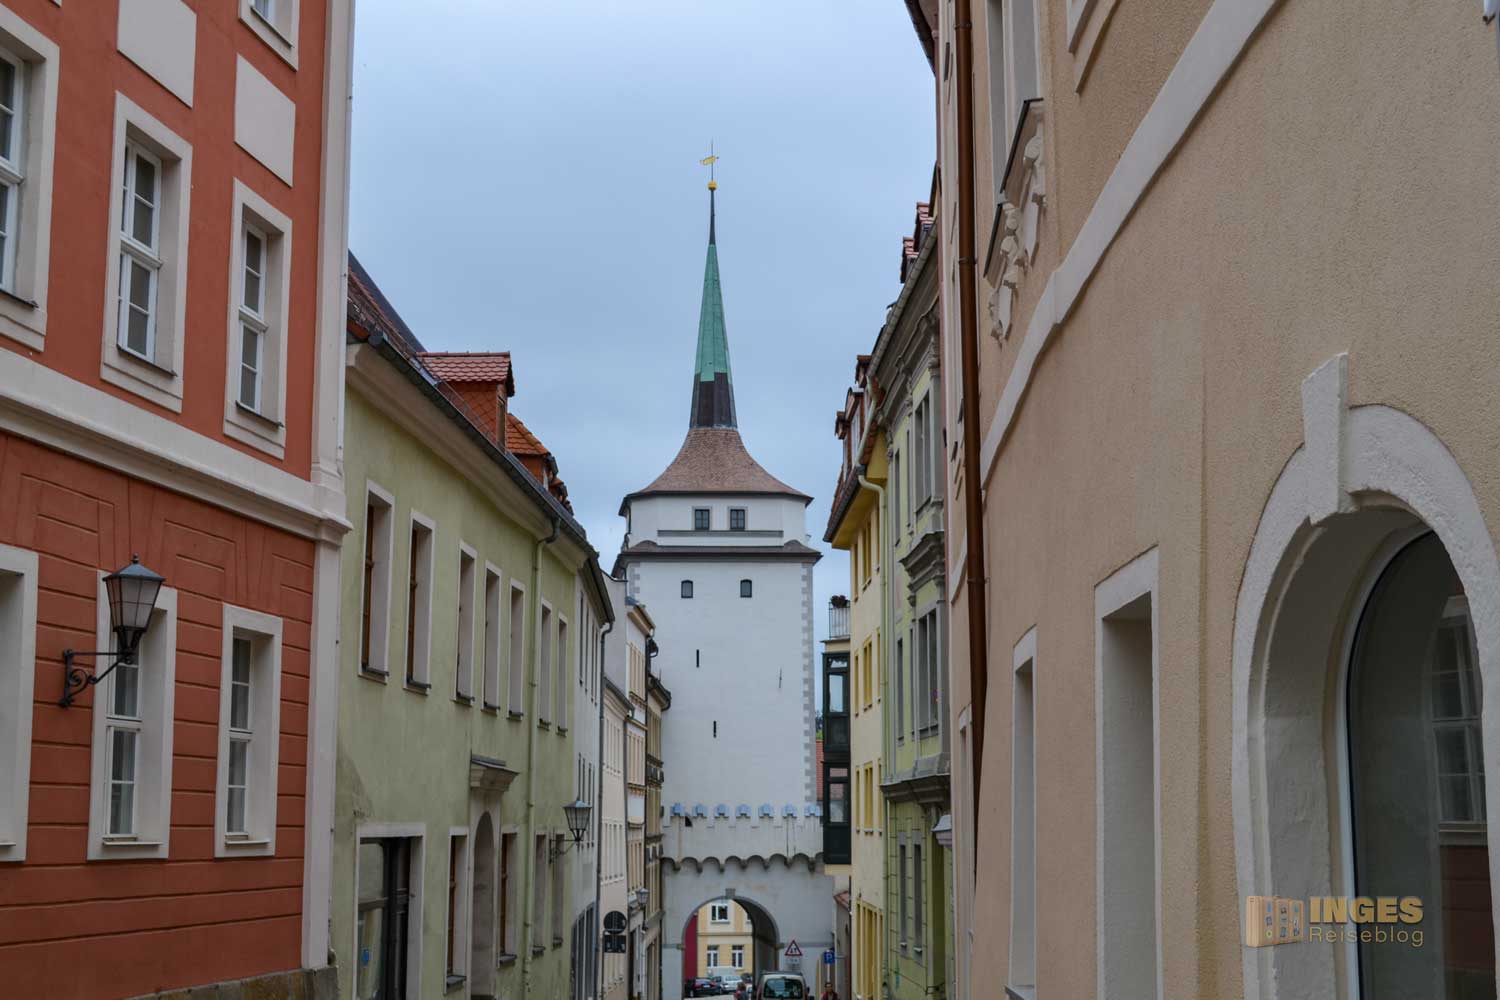 Schülerturm in Bautzen